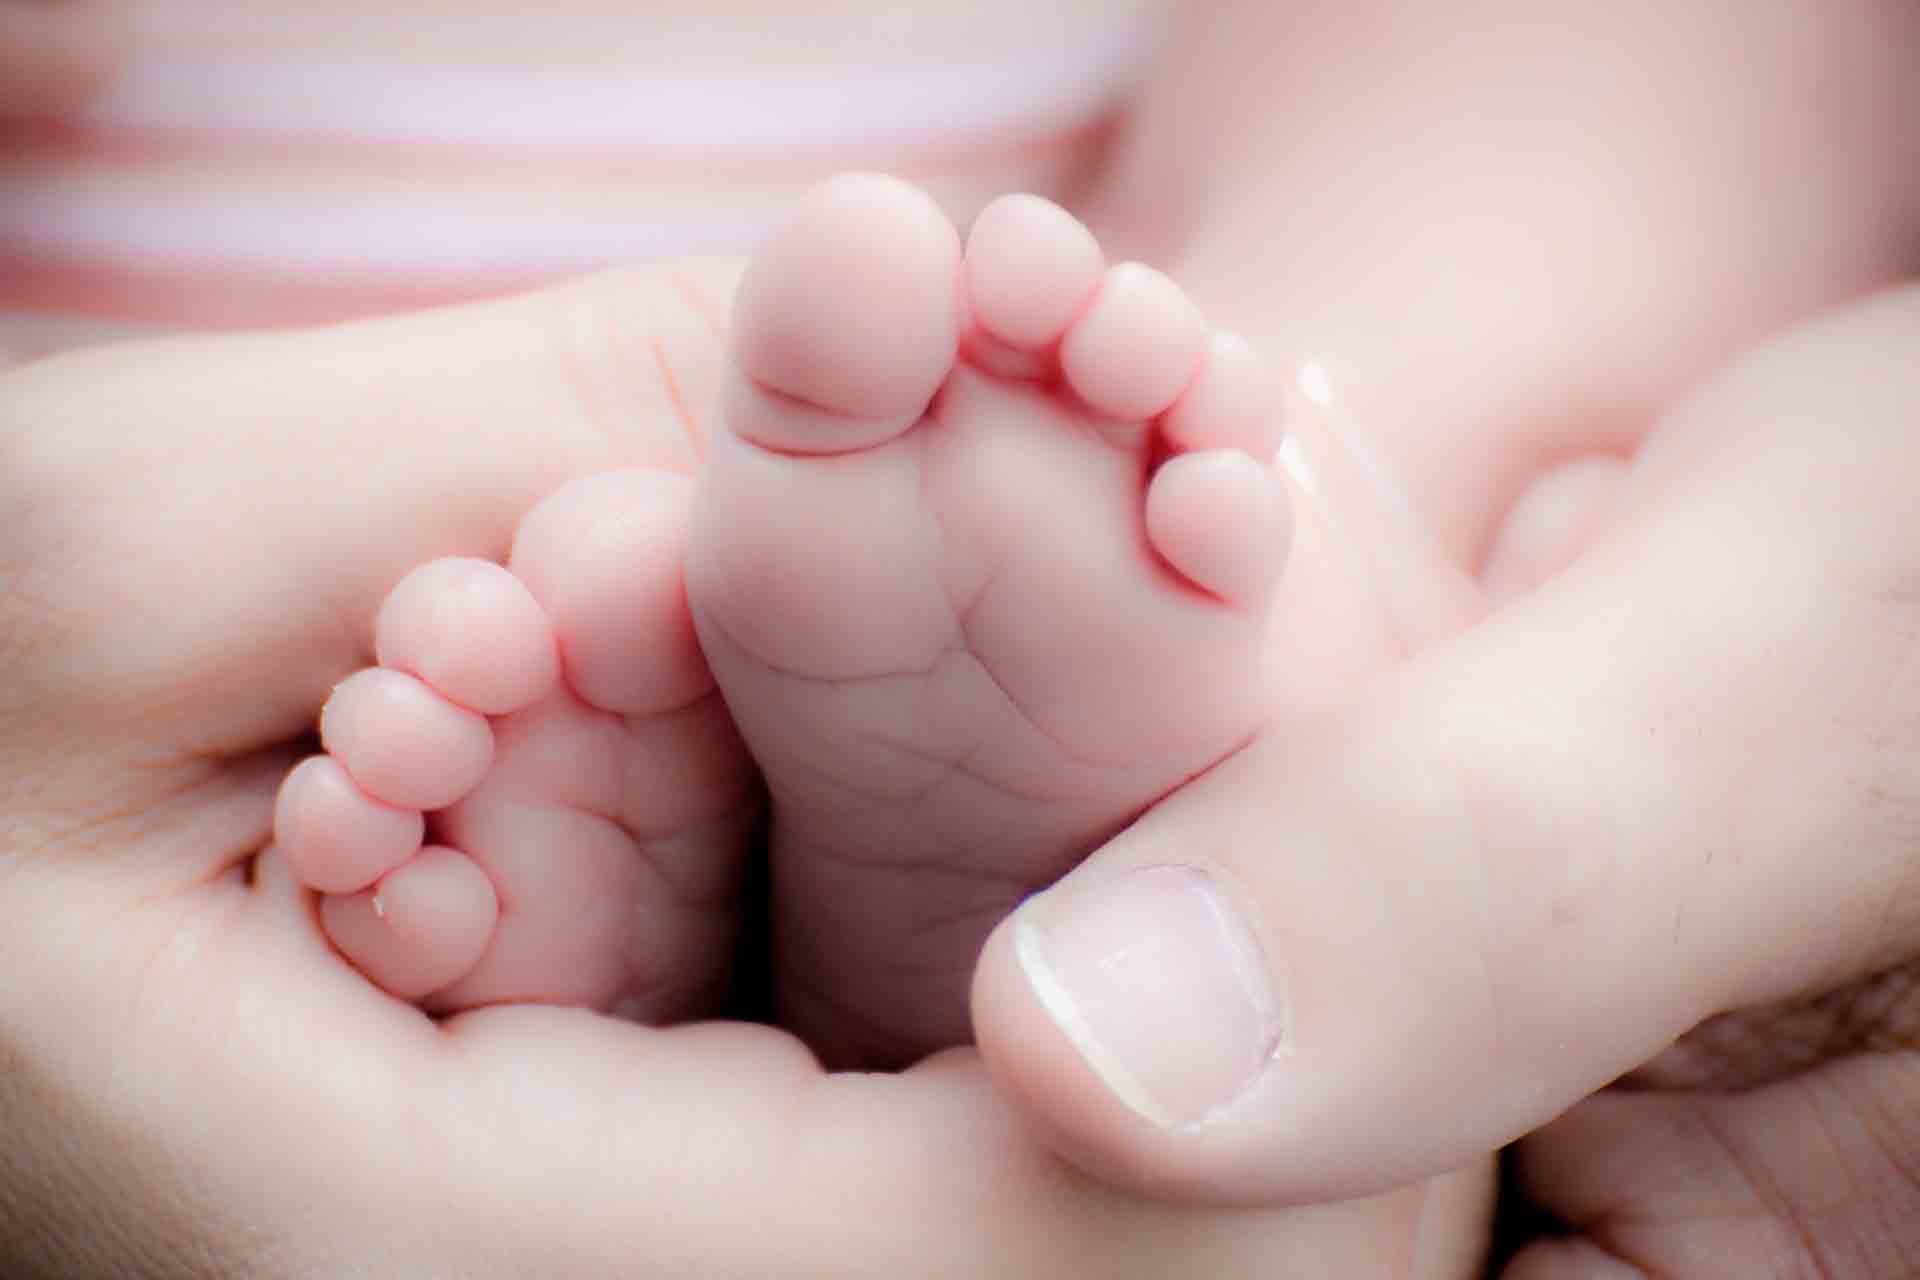 Nakna små babyfötter som hålls om av vuxens händer.